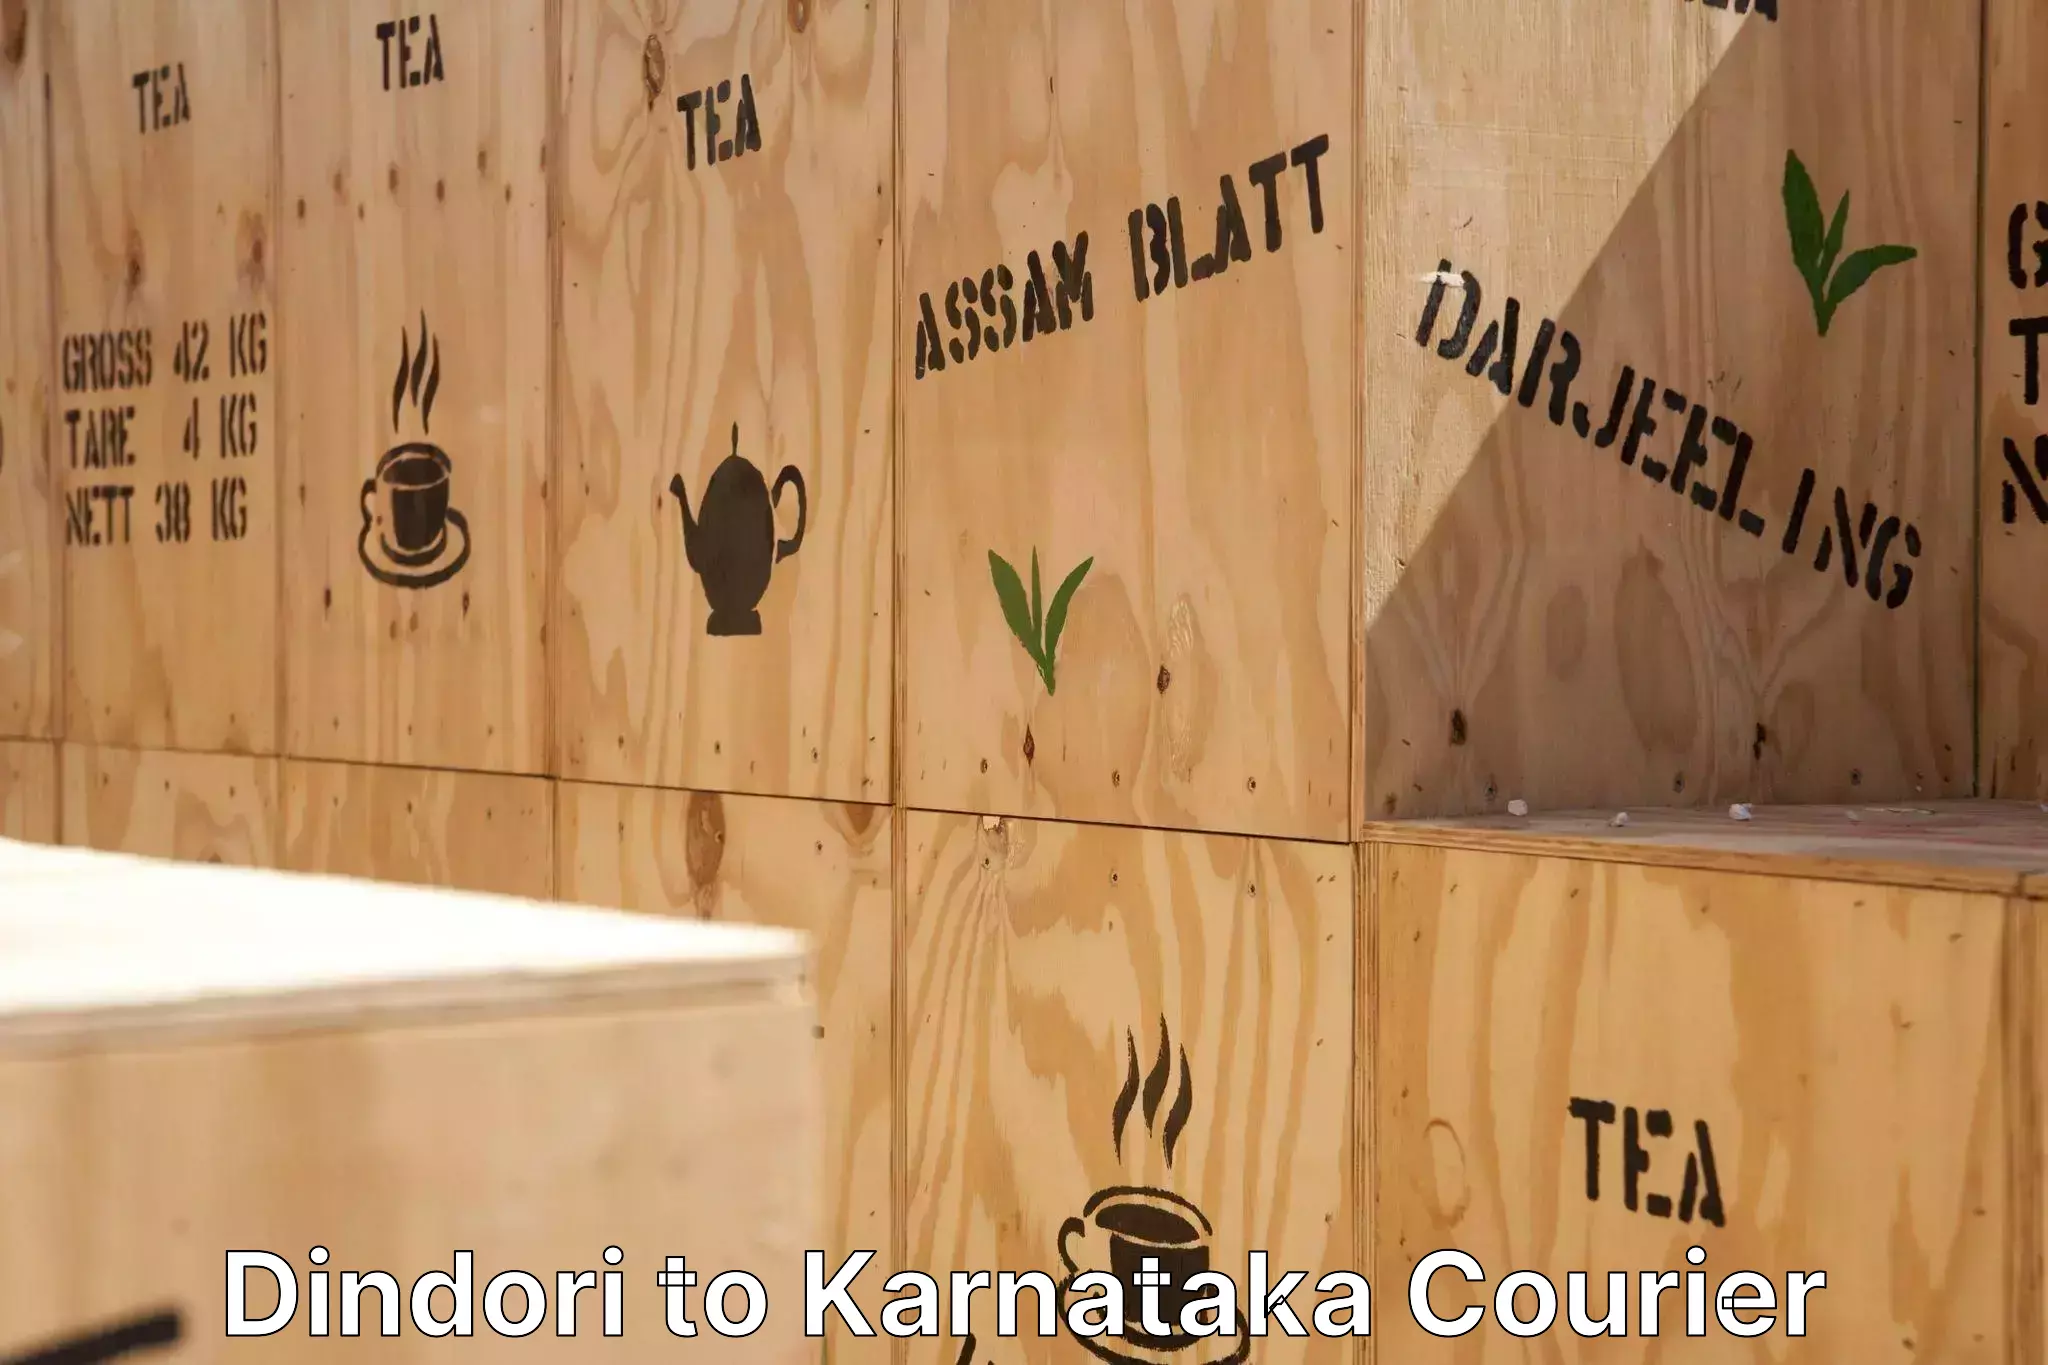 Moving and packing experts Dindori to Karnataka